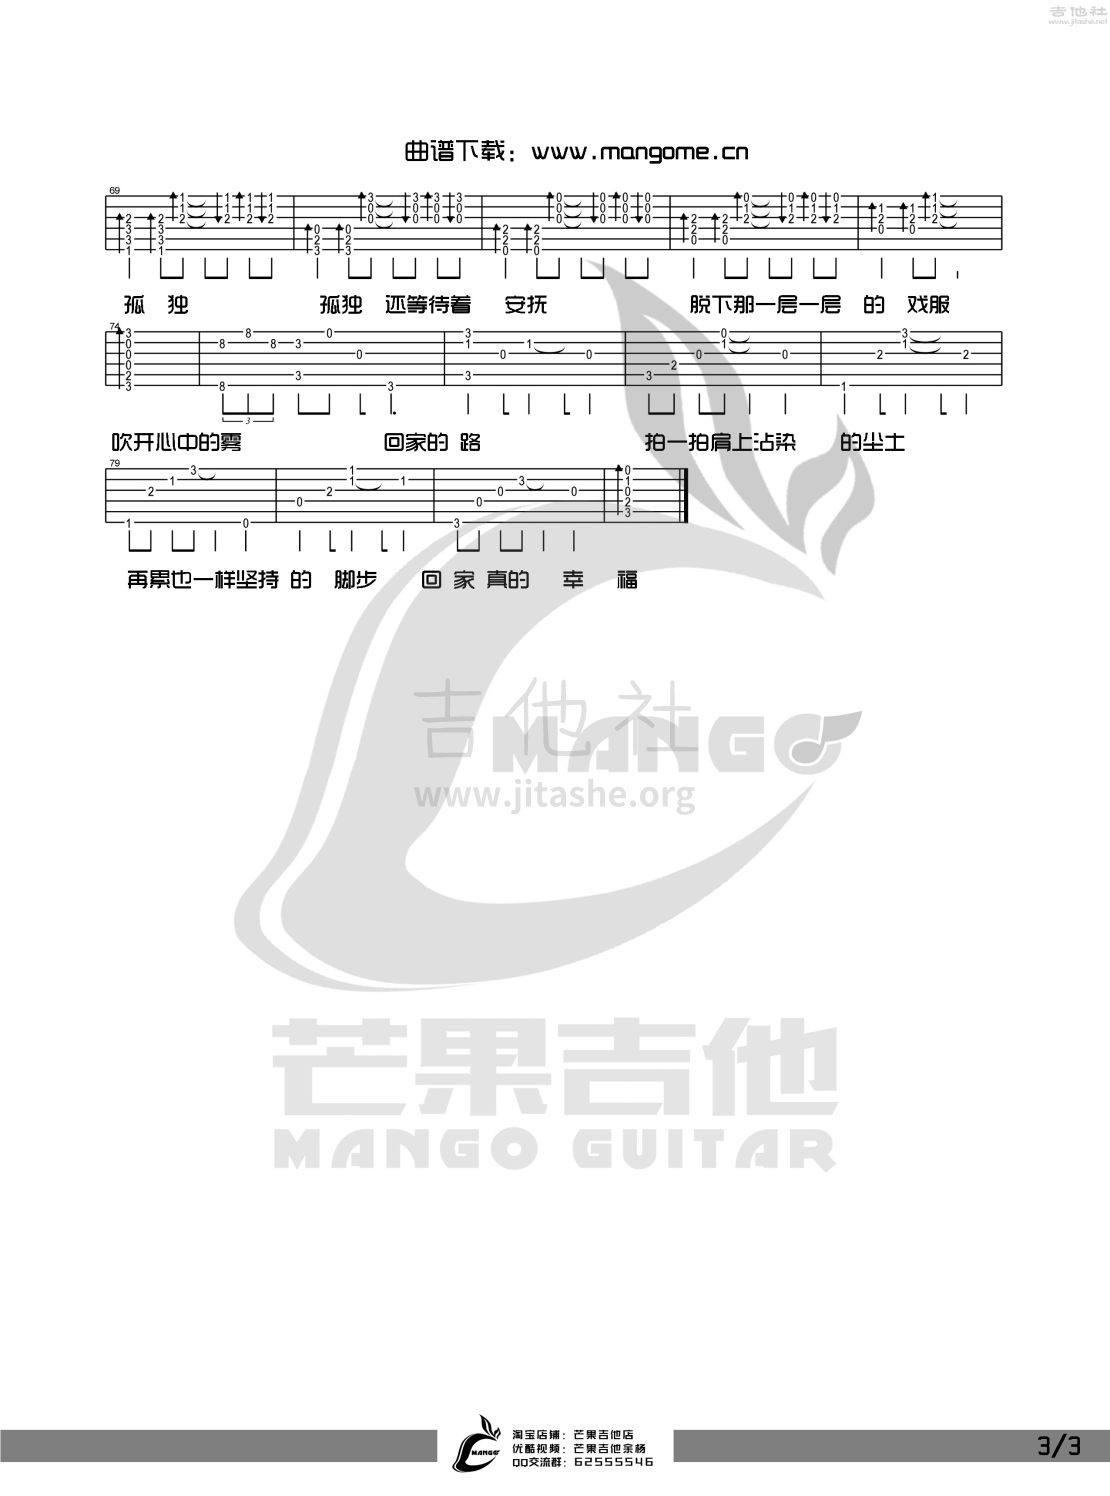 打印:回家的路(2015年央视春晚预热宣传曲,《失孤》的主题曲)吉他谱_刘德华(Andy Lau)_回家的路-3.jpg